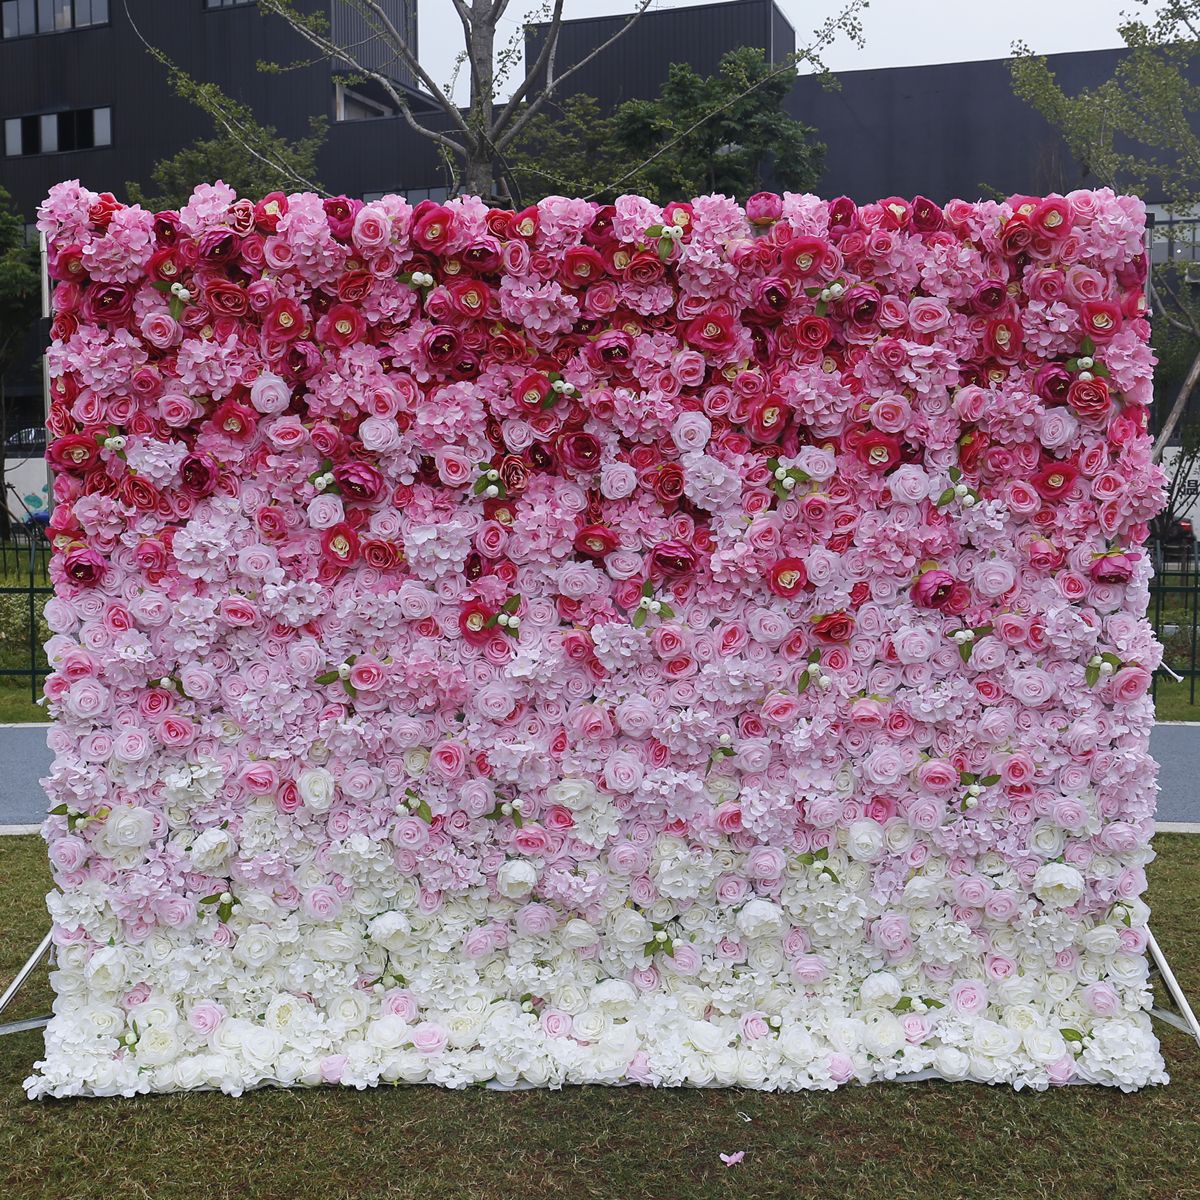 3D dreidimensionaler Farbverlauf Stoffboden Simulation Blumenwand Hintergrundwand Hochzeitsdekoration Shop Hochzeitsdekoration im Freien